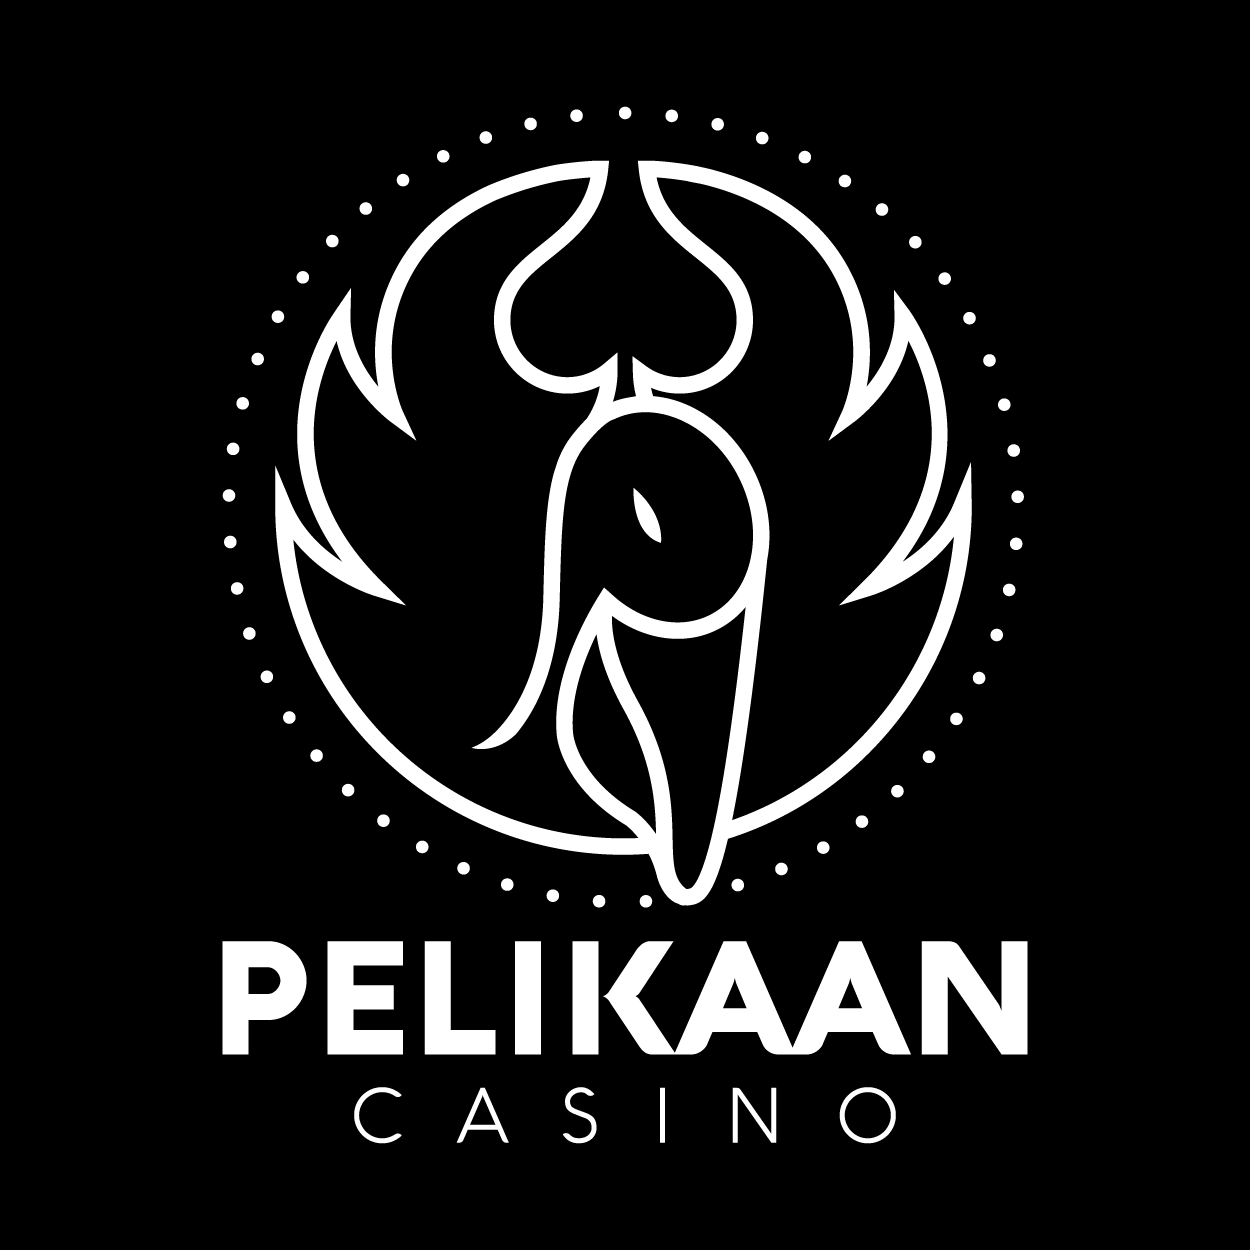 Pelikaan Casino logo